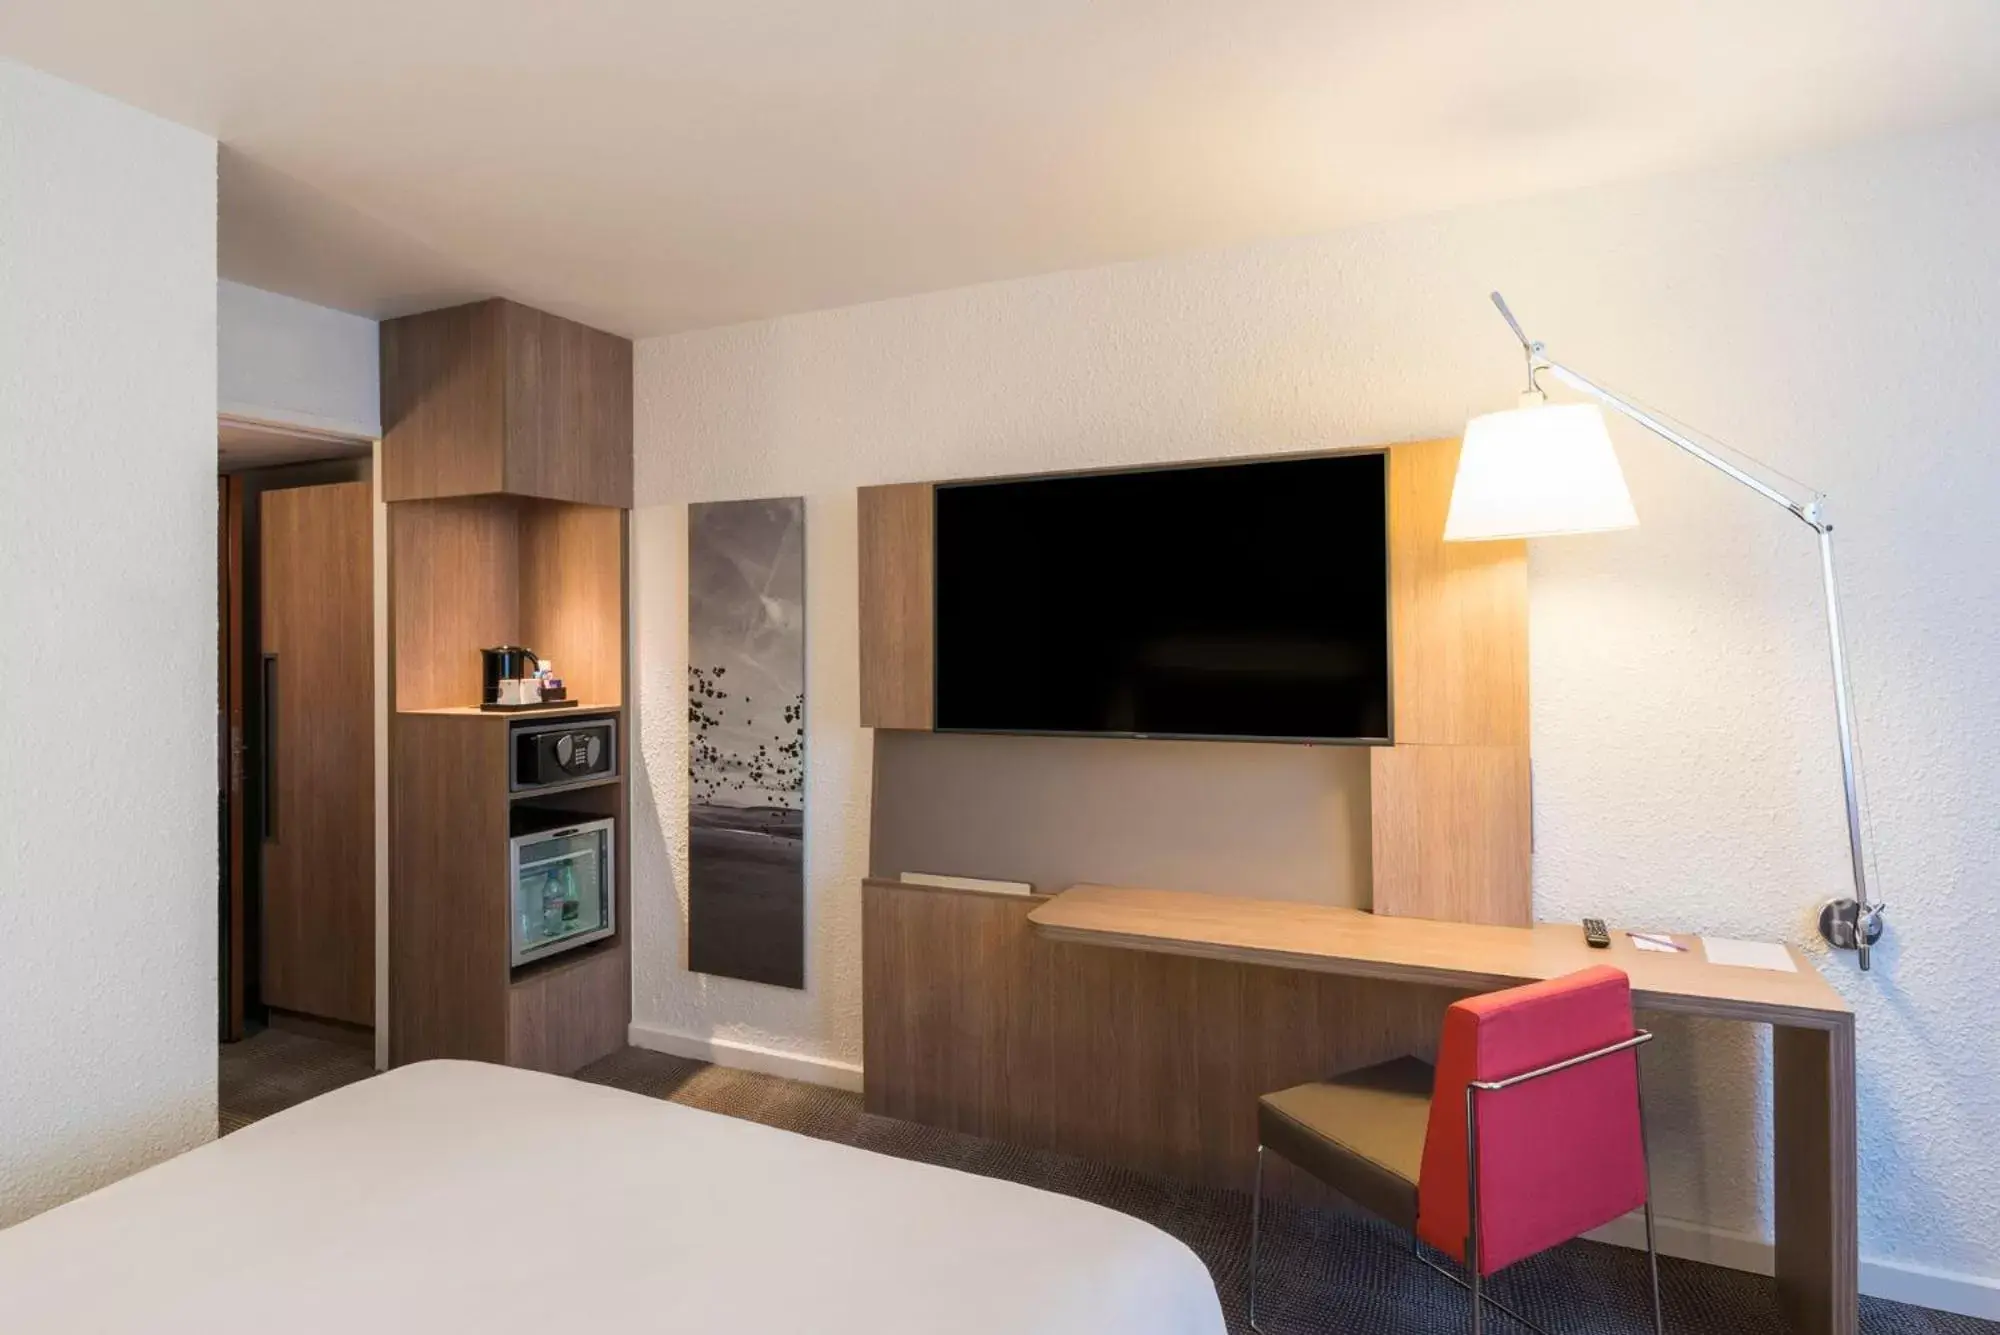 Bedroom, TV/Entertainment Center in Novotel Lyon Bron Eurexpo